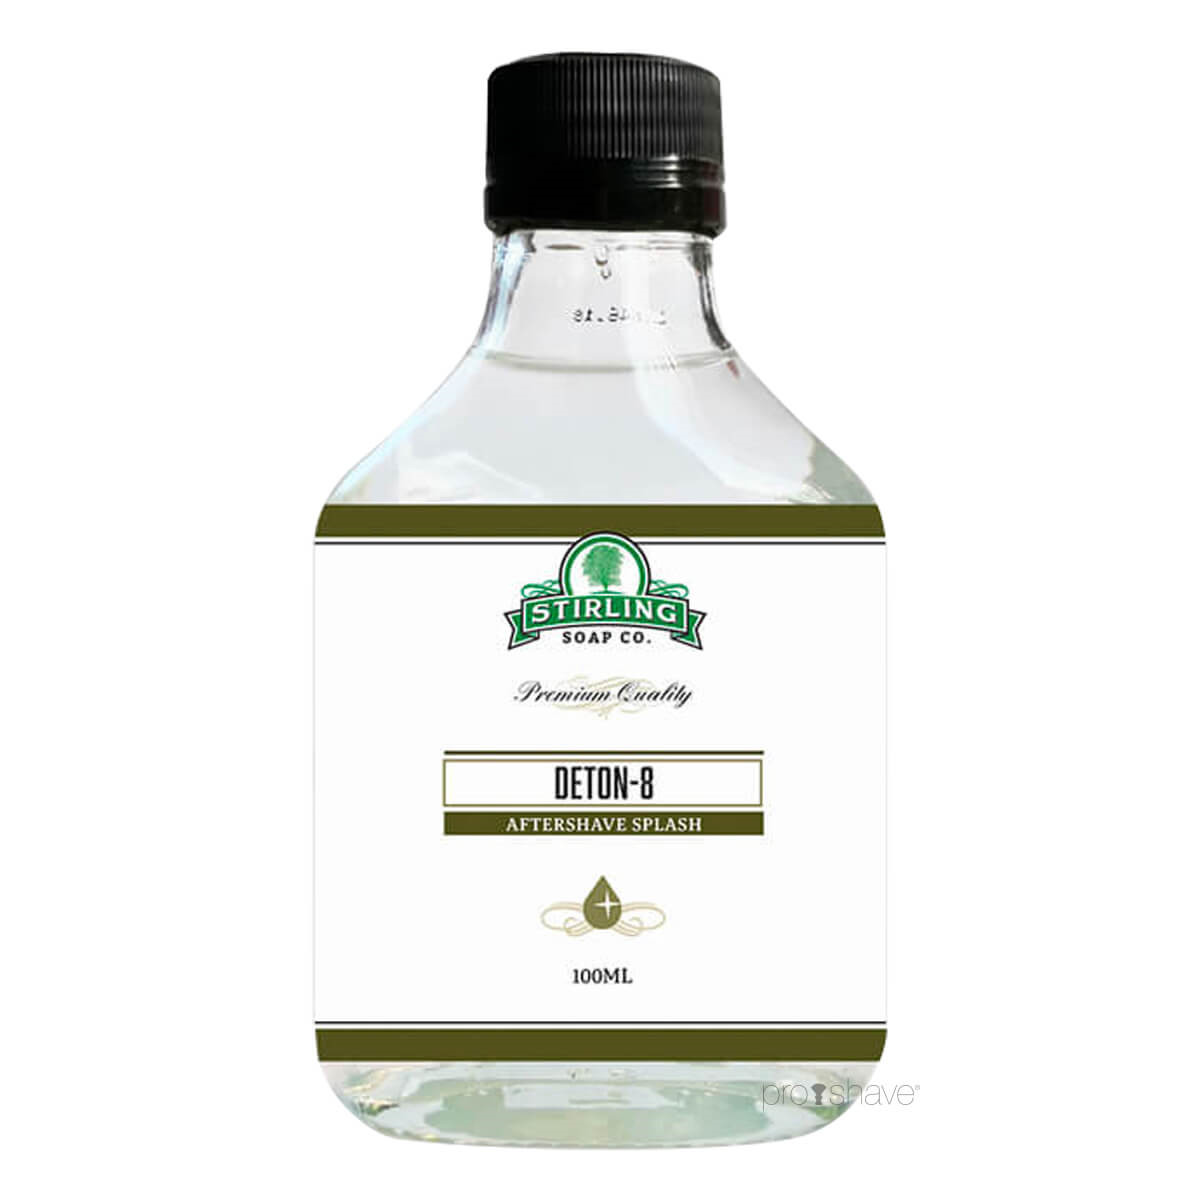 Stirling Soap Co. Aftershave Splash, Deton-8, 100 ml.